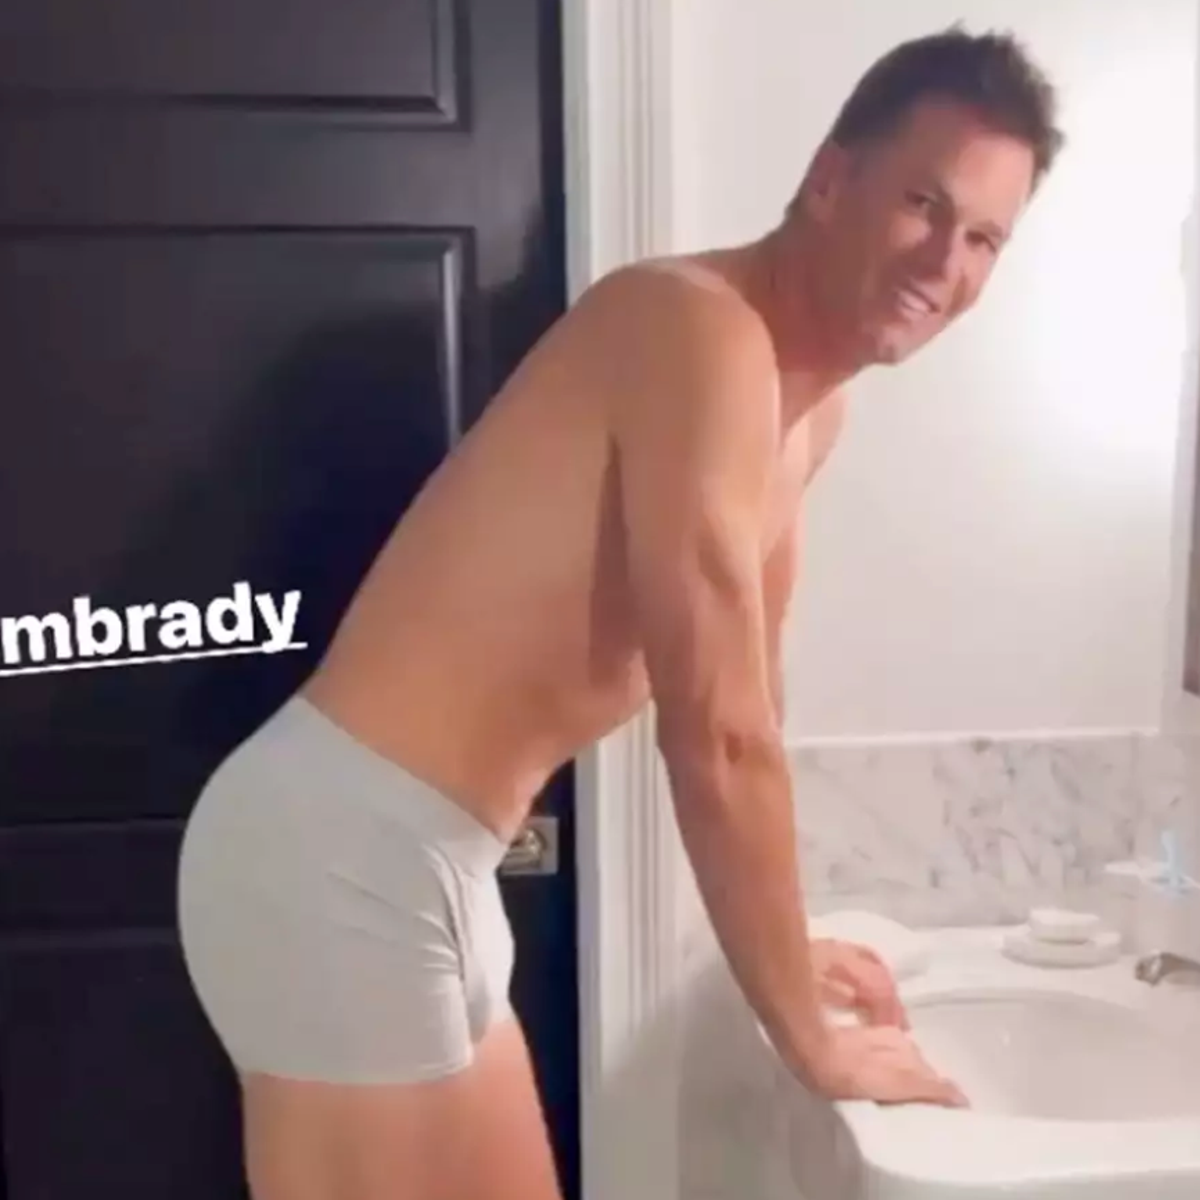 Gisele Bündchen shocks fans with video of husband Tom Brady in his underwear